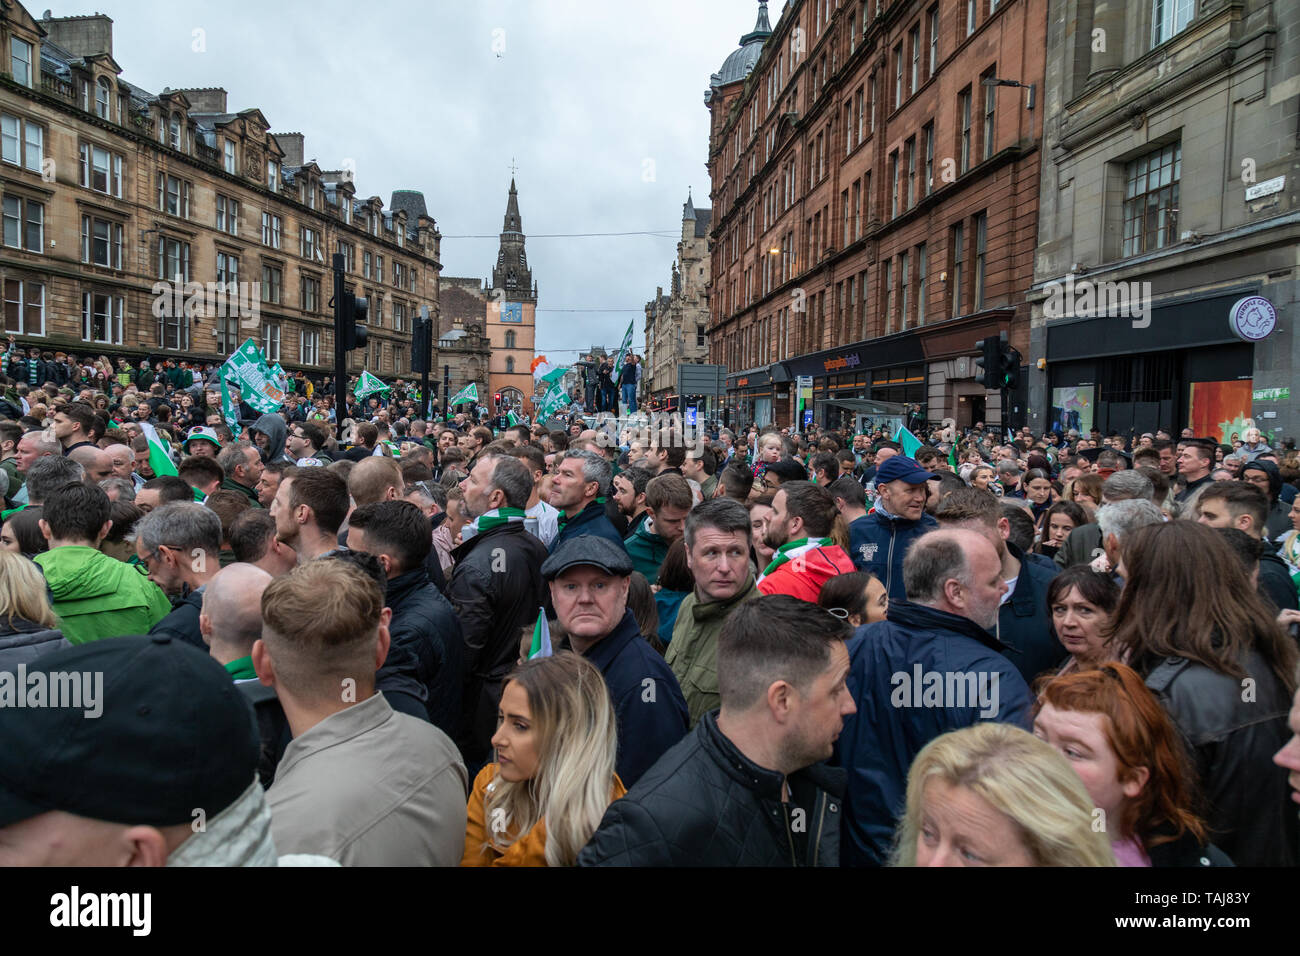 Glasgow Celtic Football Club gewinnen die Scottish Cup gegen Herzen aber die oben offenen Parade bus danach organisiert ist unter Sicherheit Ängste abgebrochen. Tausende von Fans für fast zwei Stunden bei der Stadt Saltmarket und Glasgow Cross in Erwartung seiner Ankunft versammelt. Stockfoto